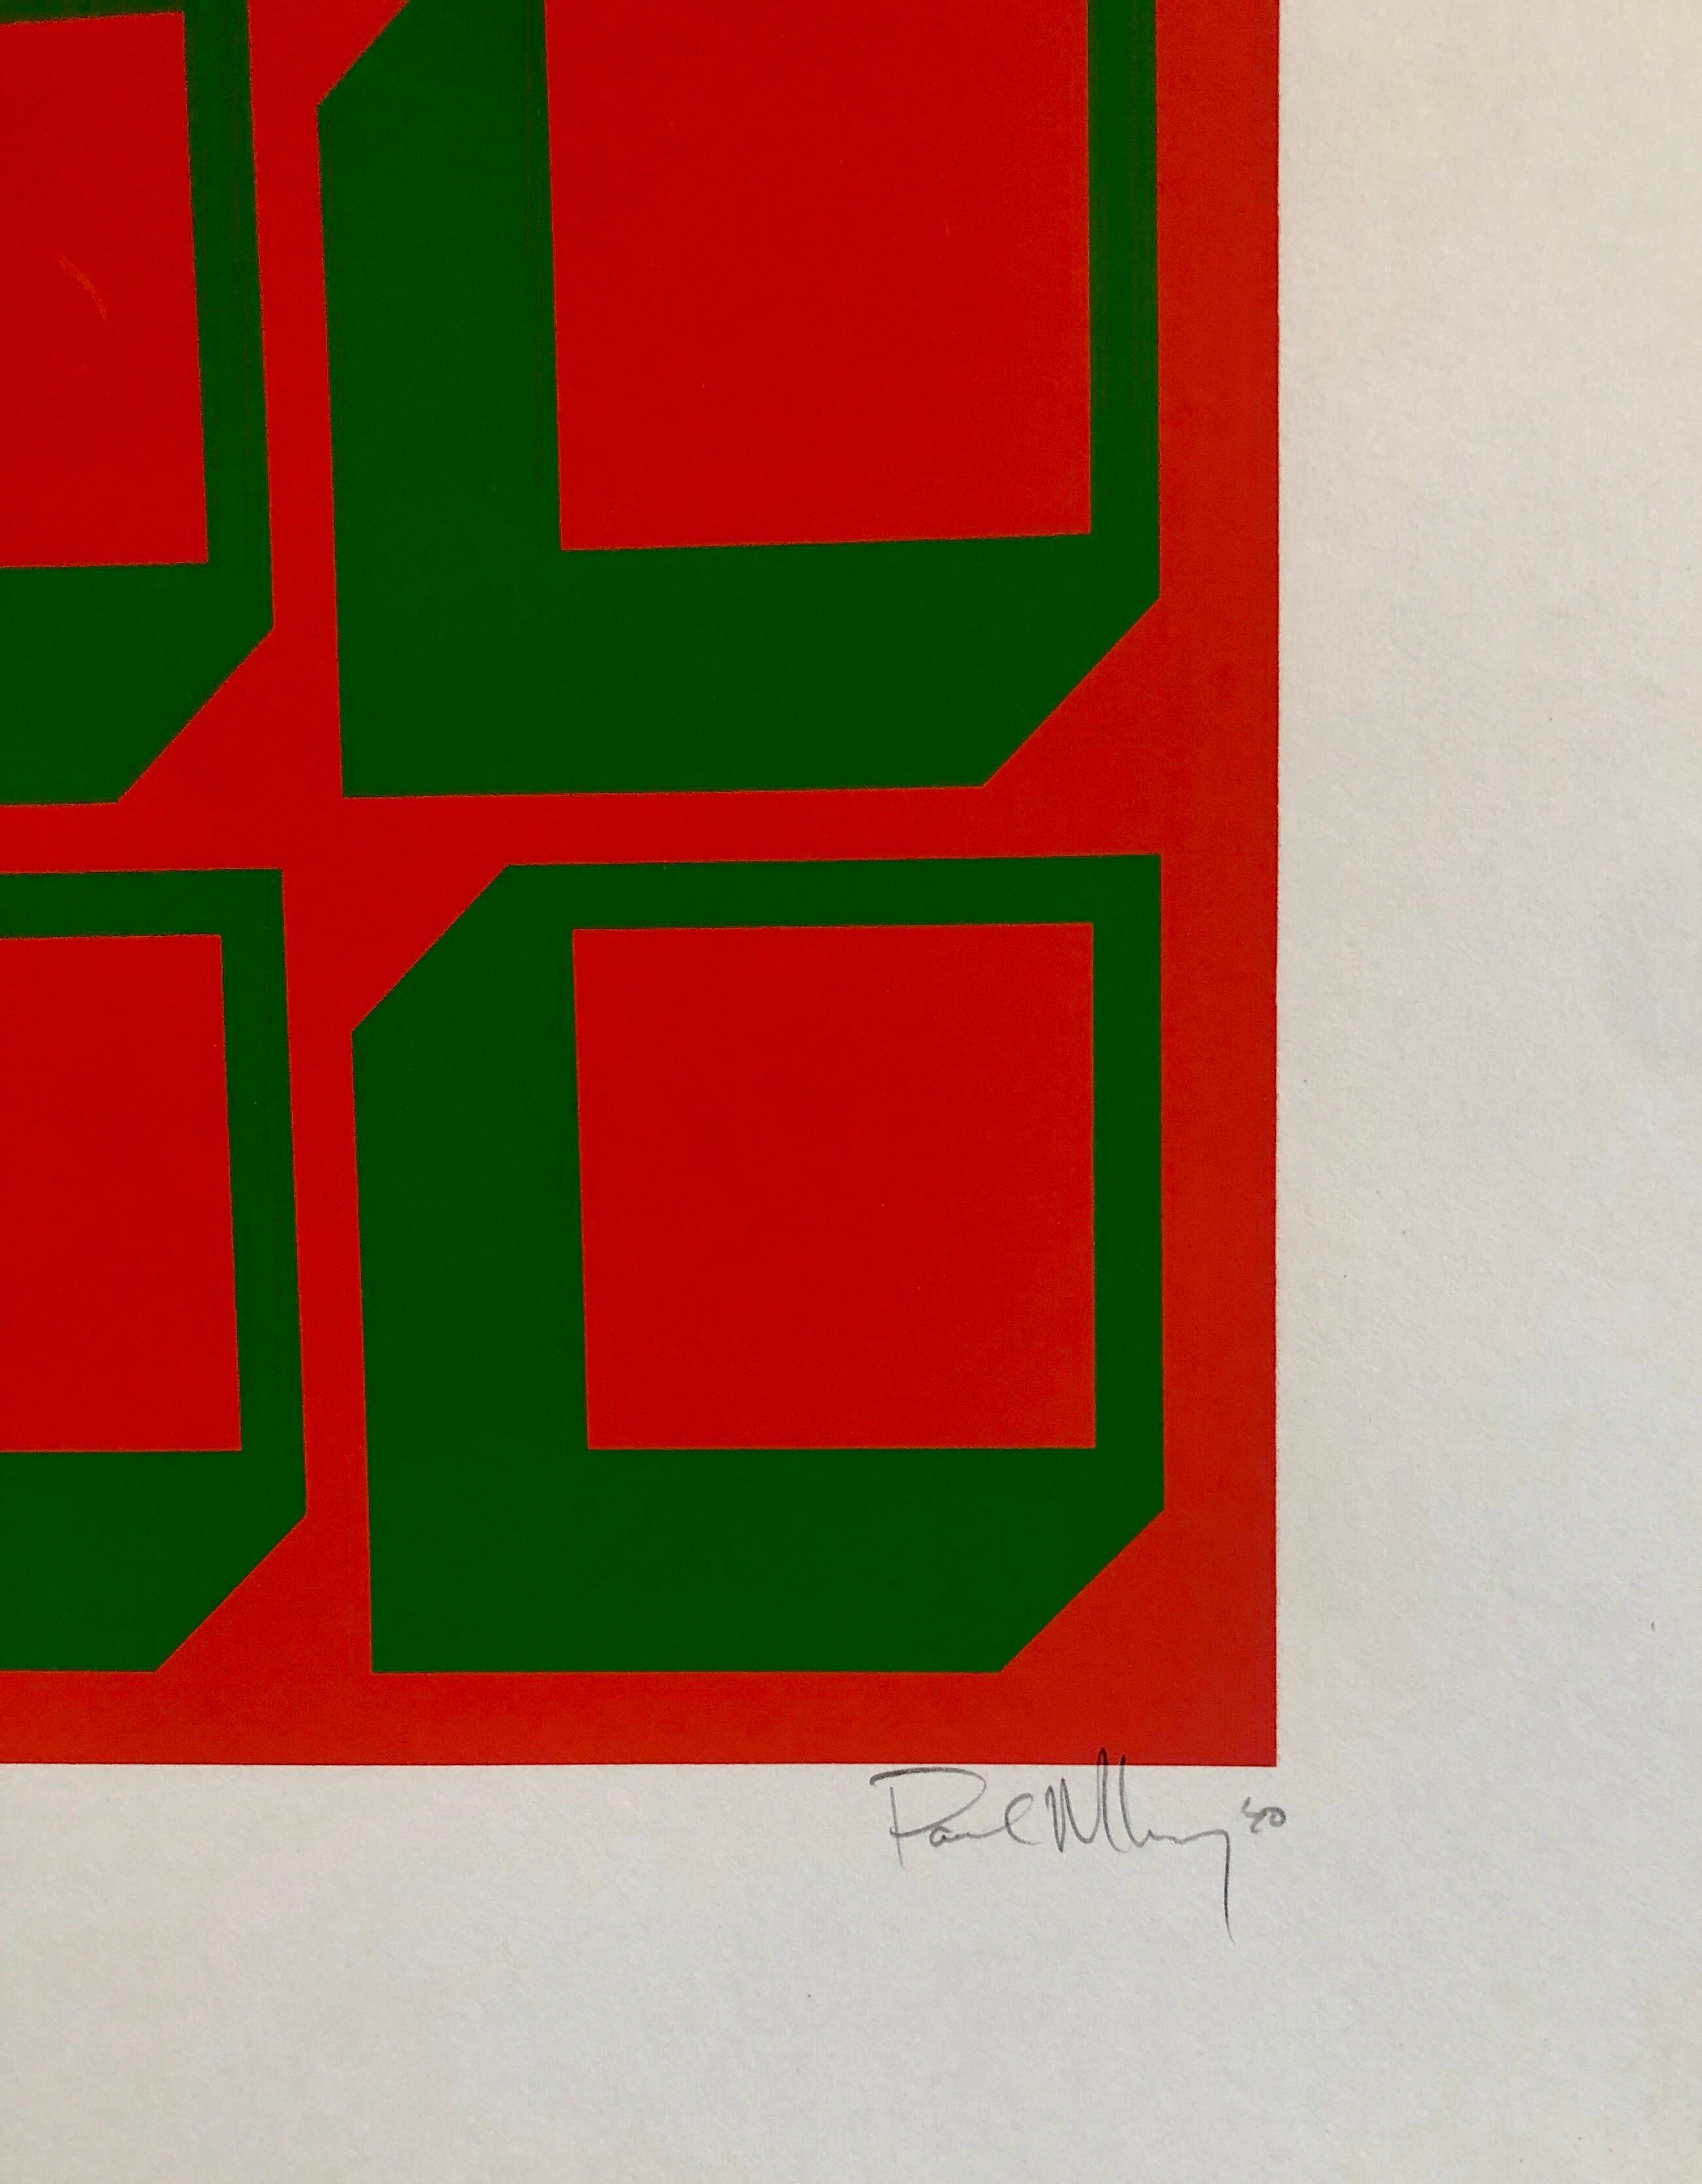 Kinetischer Siebdruck aus Seide mit Paraventdruck in der Art Vasarely Op Art, geometrisch abstrakt, 1970er Jahre – Print von Paul M. Levy